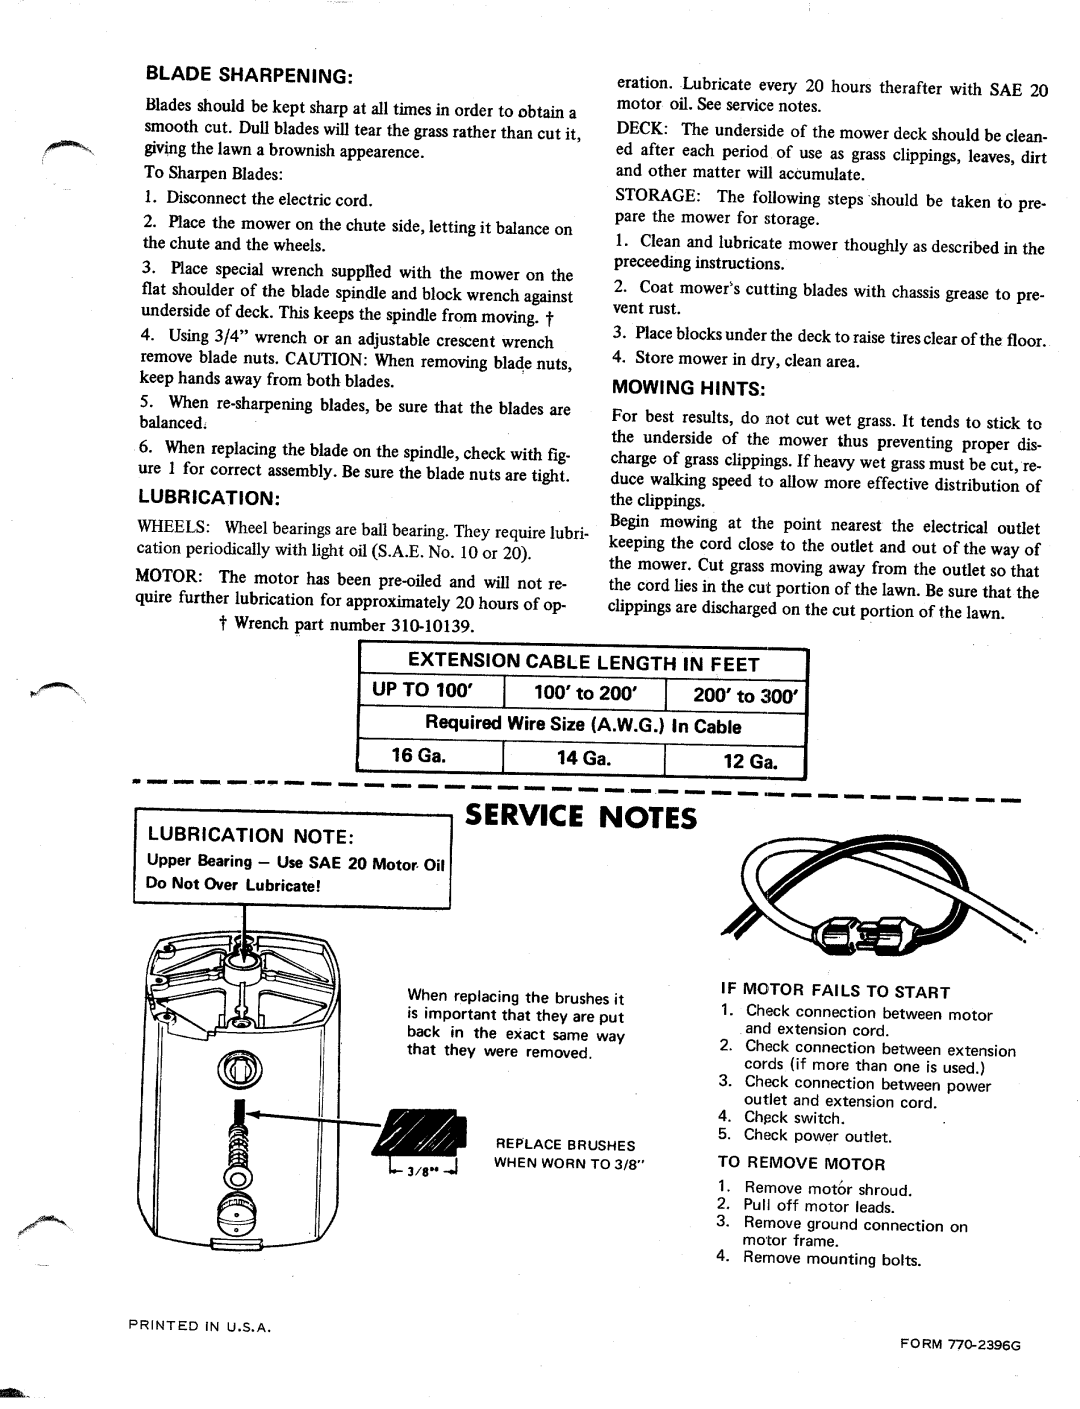 MTD 181-850 manual 